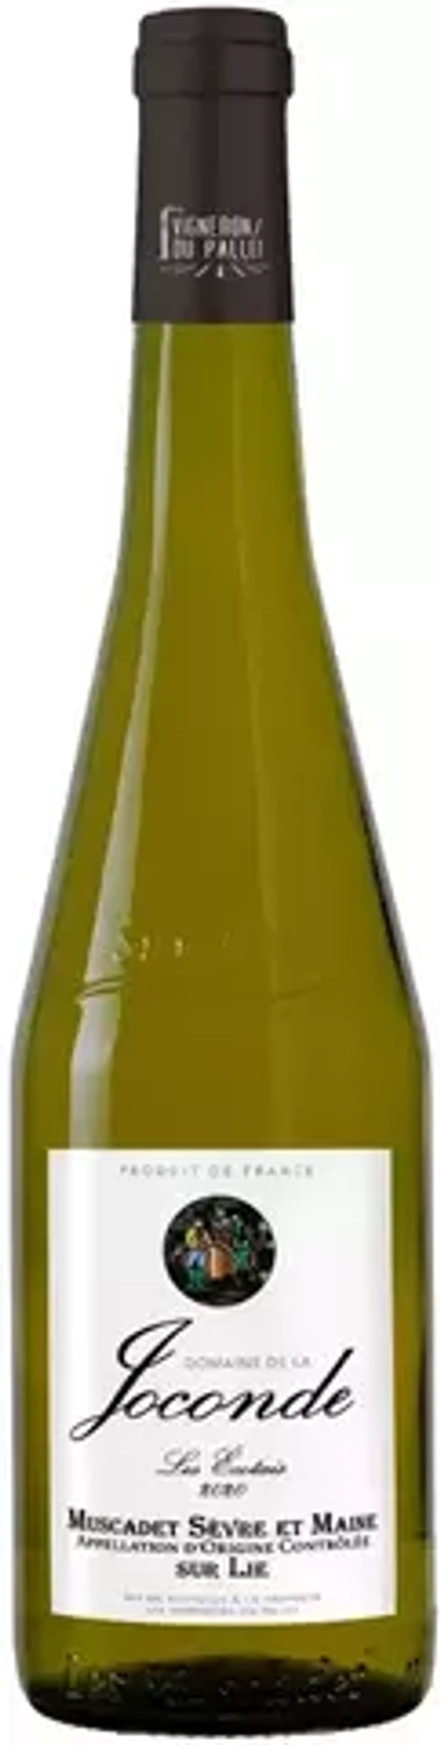 Вино Domaine de la Joconde Muscadet Sevre et Maine sur Lie, 0,75